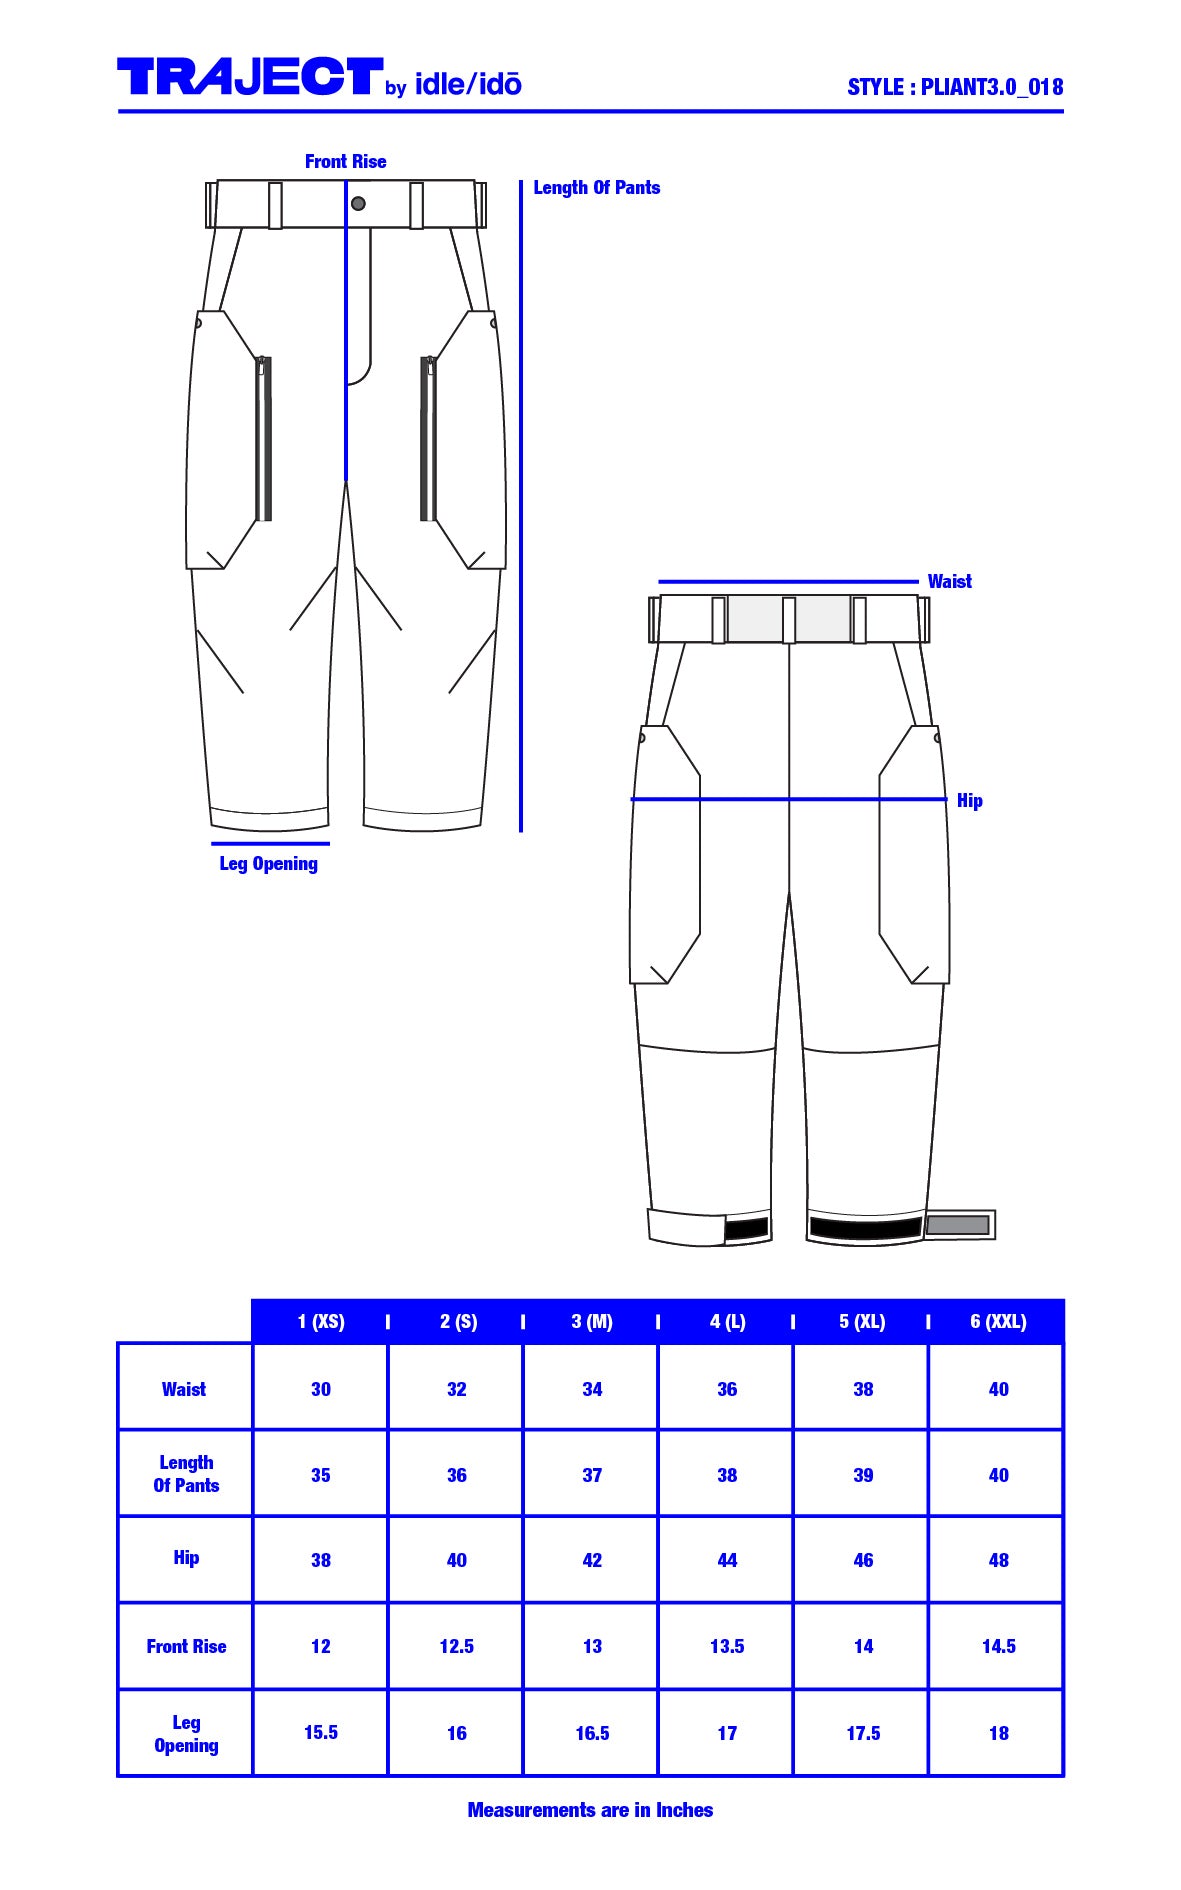 1. "PLIANT3.0" 4 Way-Stretch Cargo Pants